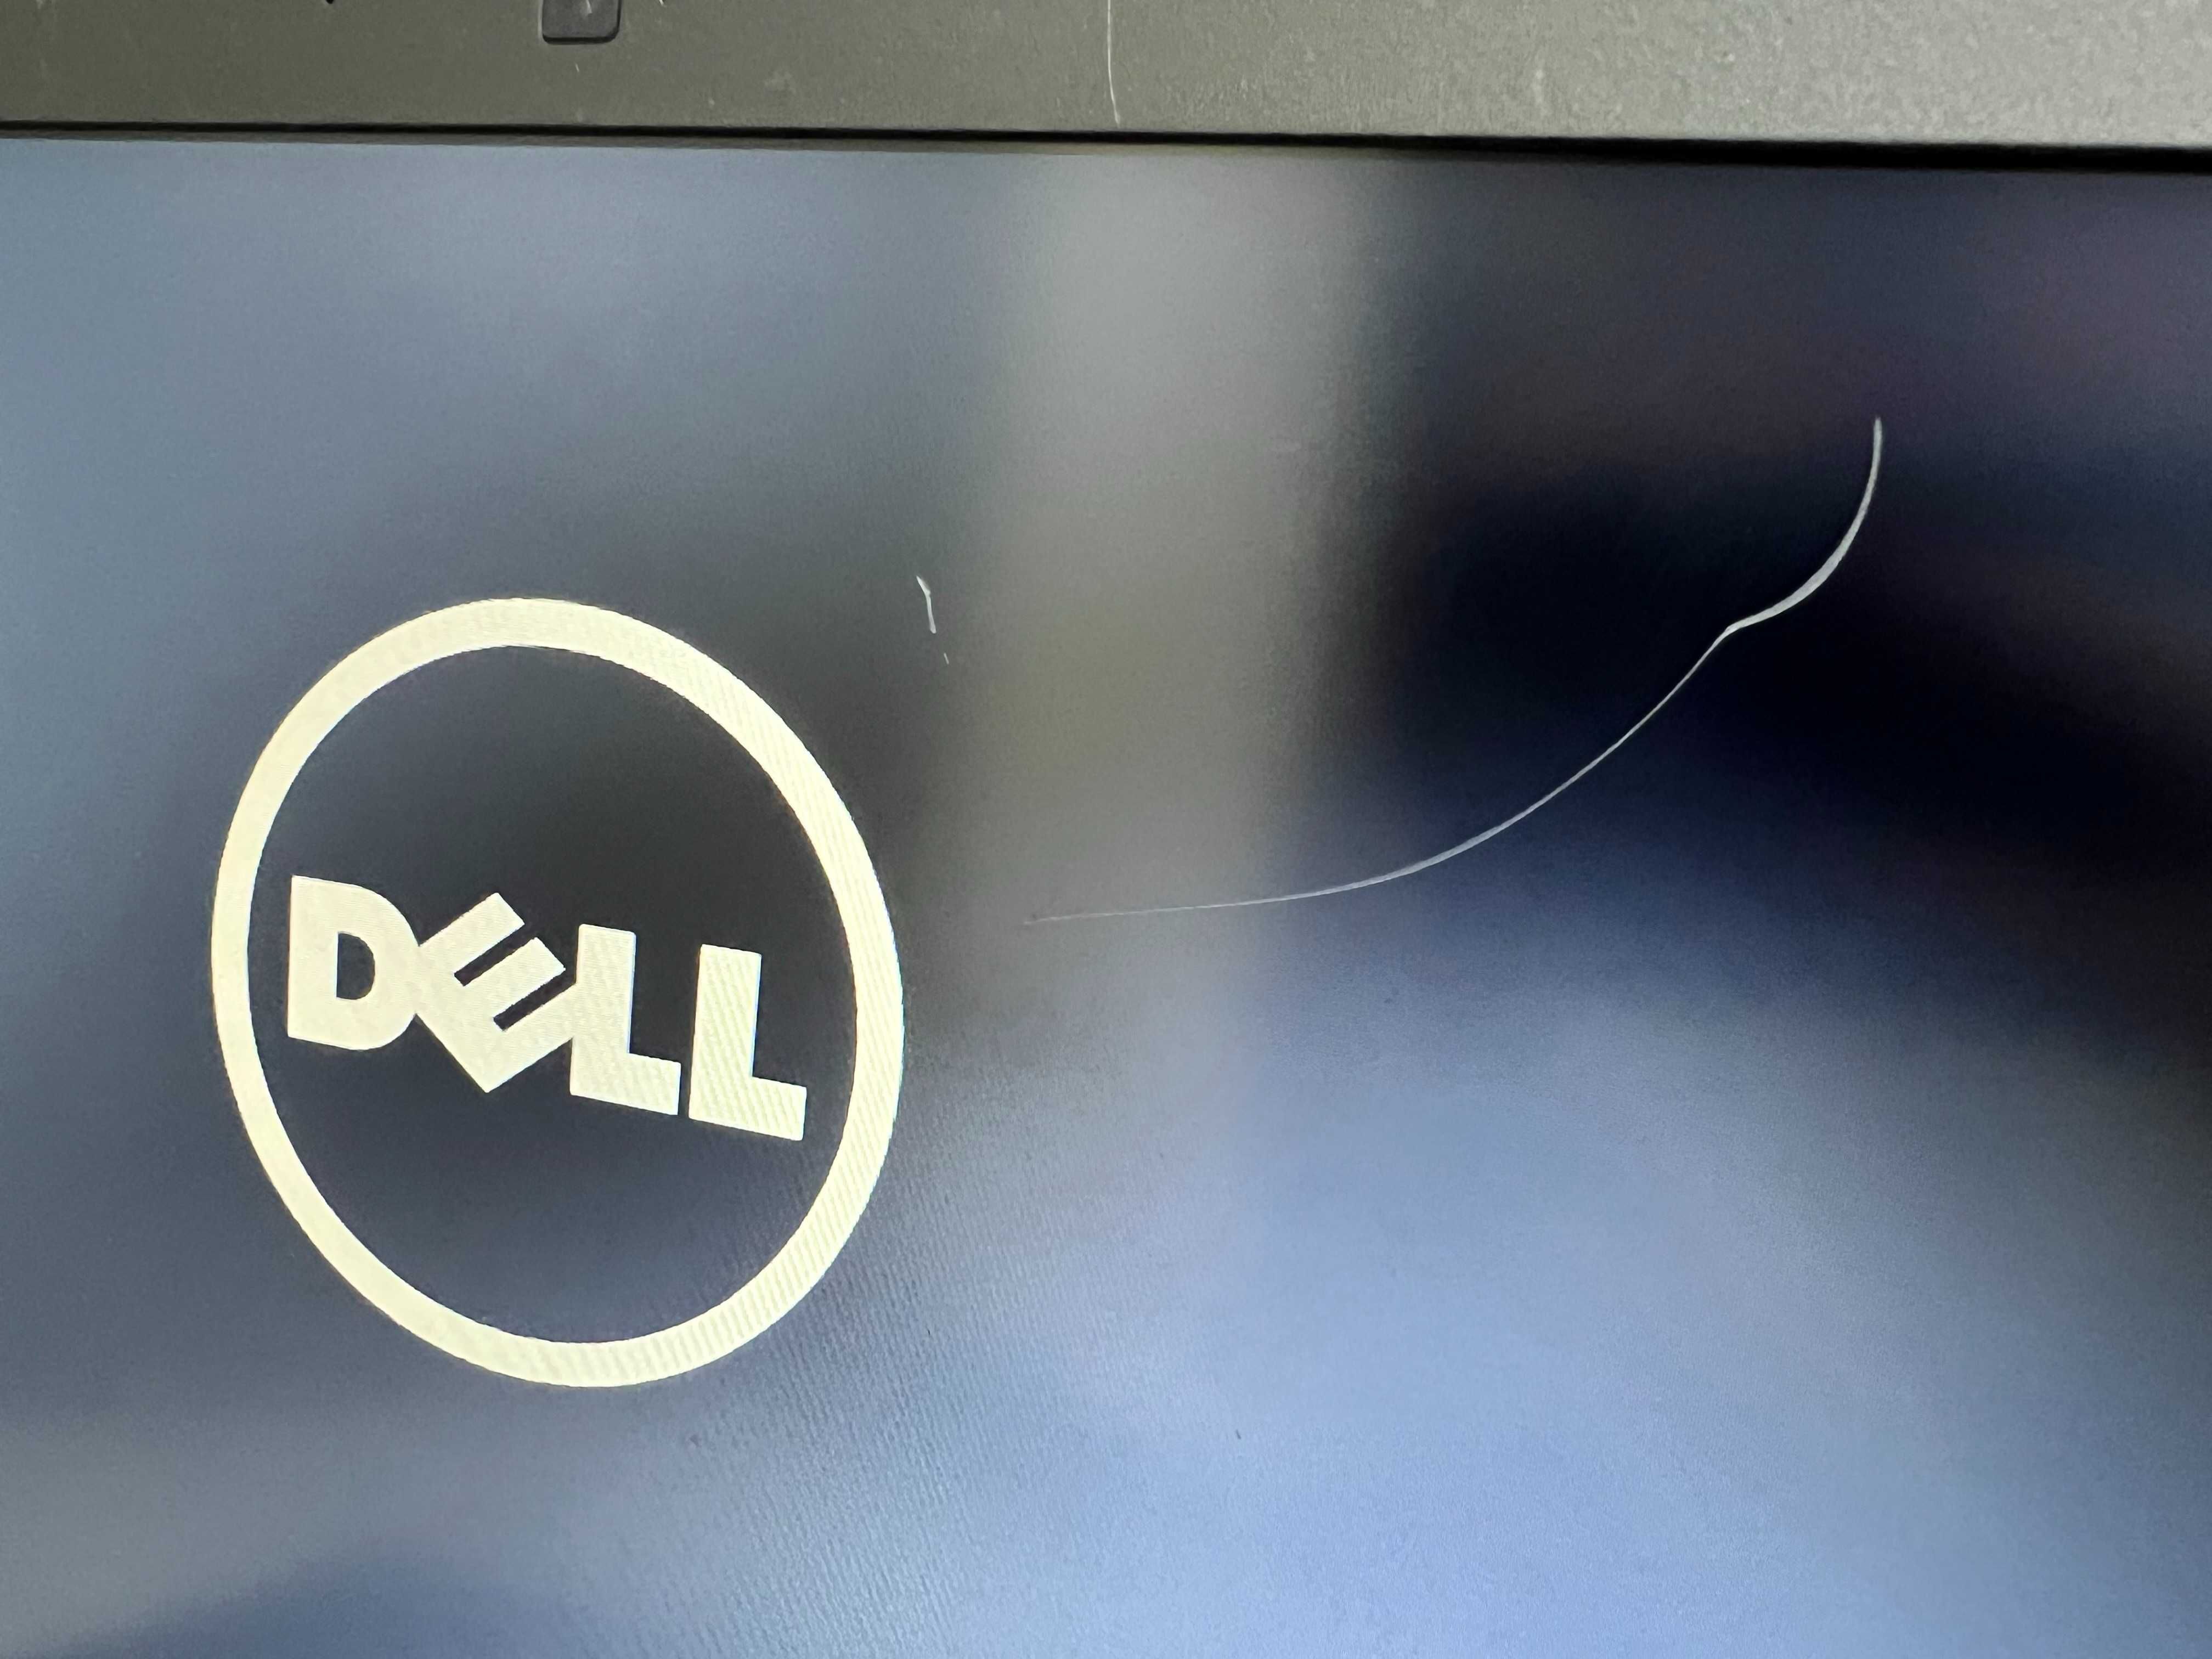 i5-6300u/240gb/15.6"/ssd Мультимедійний ноутбук Dell Делл E5570